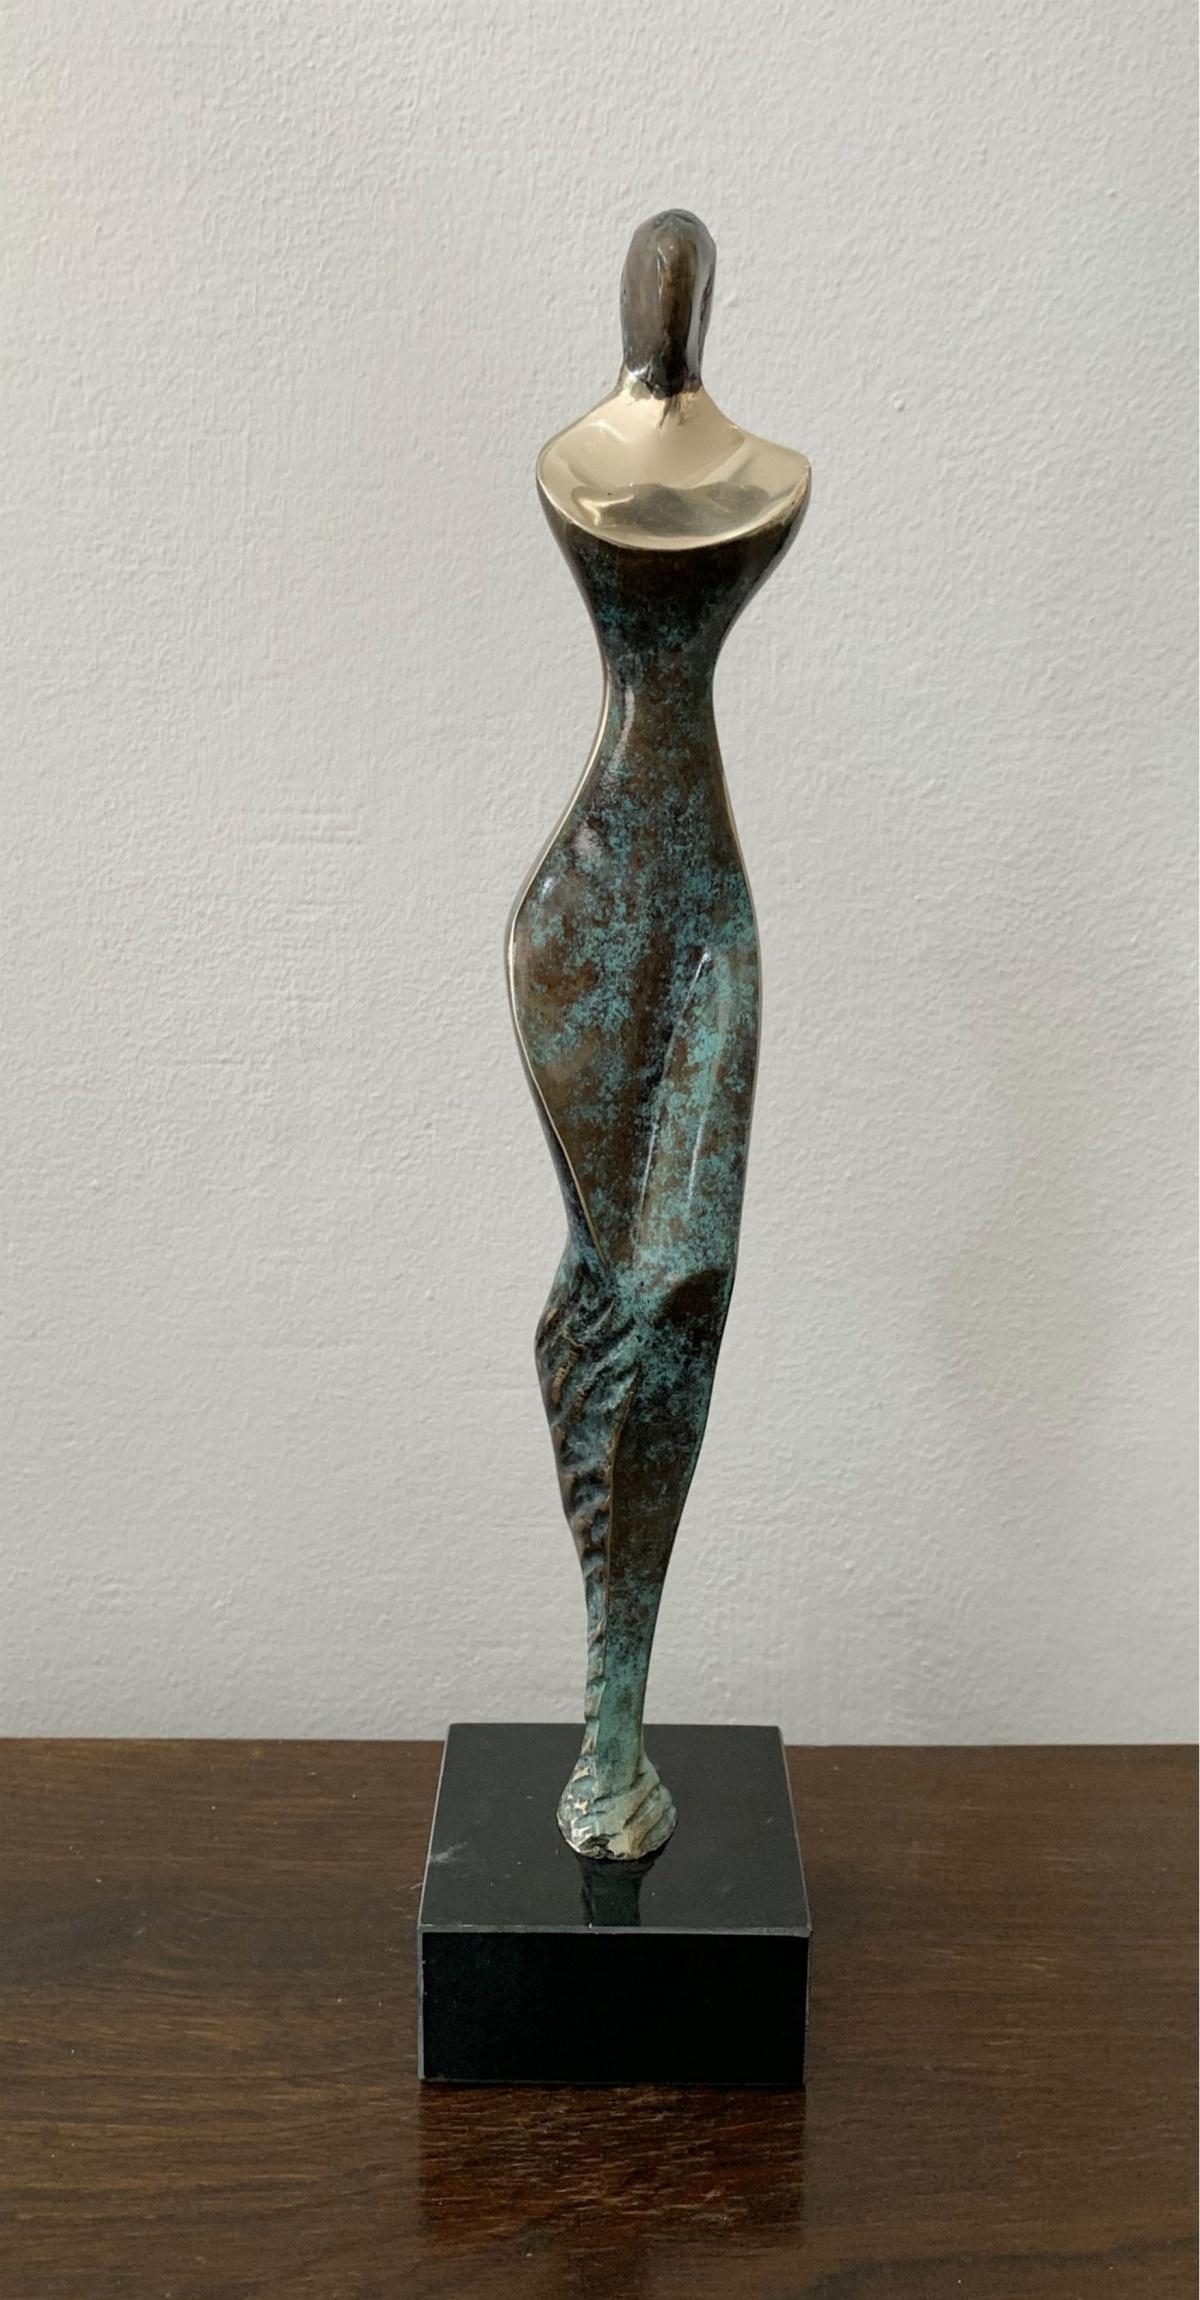 Stanisław Wysocki Figurative Sculpture - Nude - XXI century Contemporary bronze sculpture, Abstract & figurative